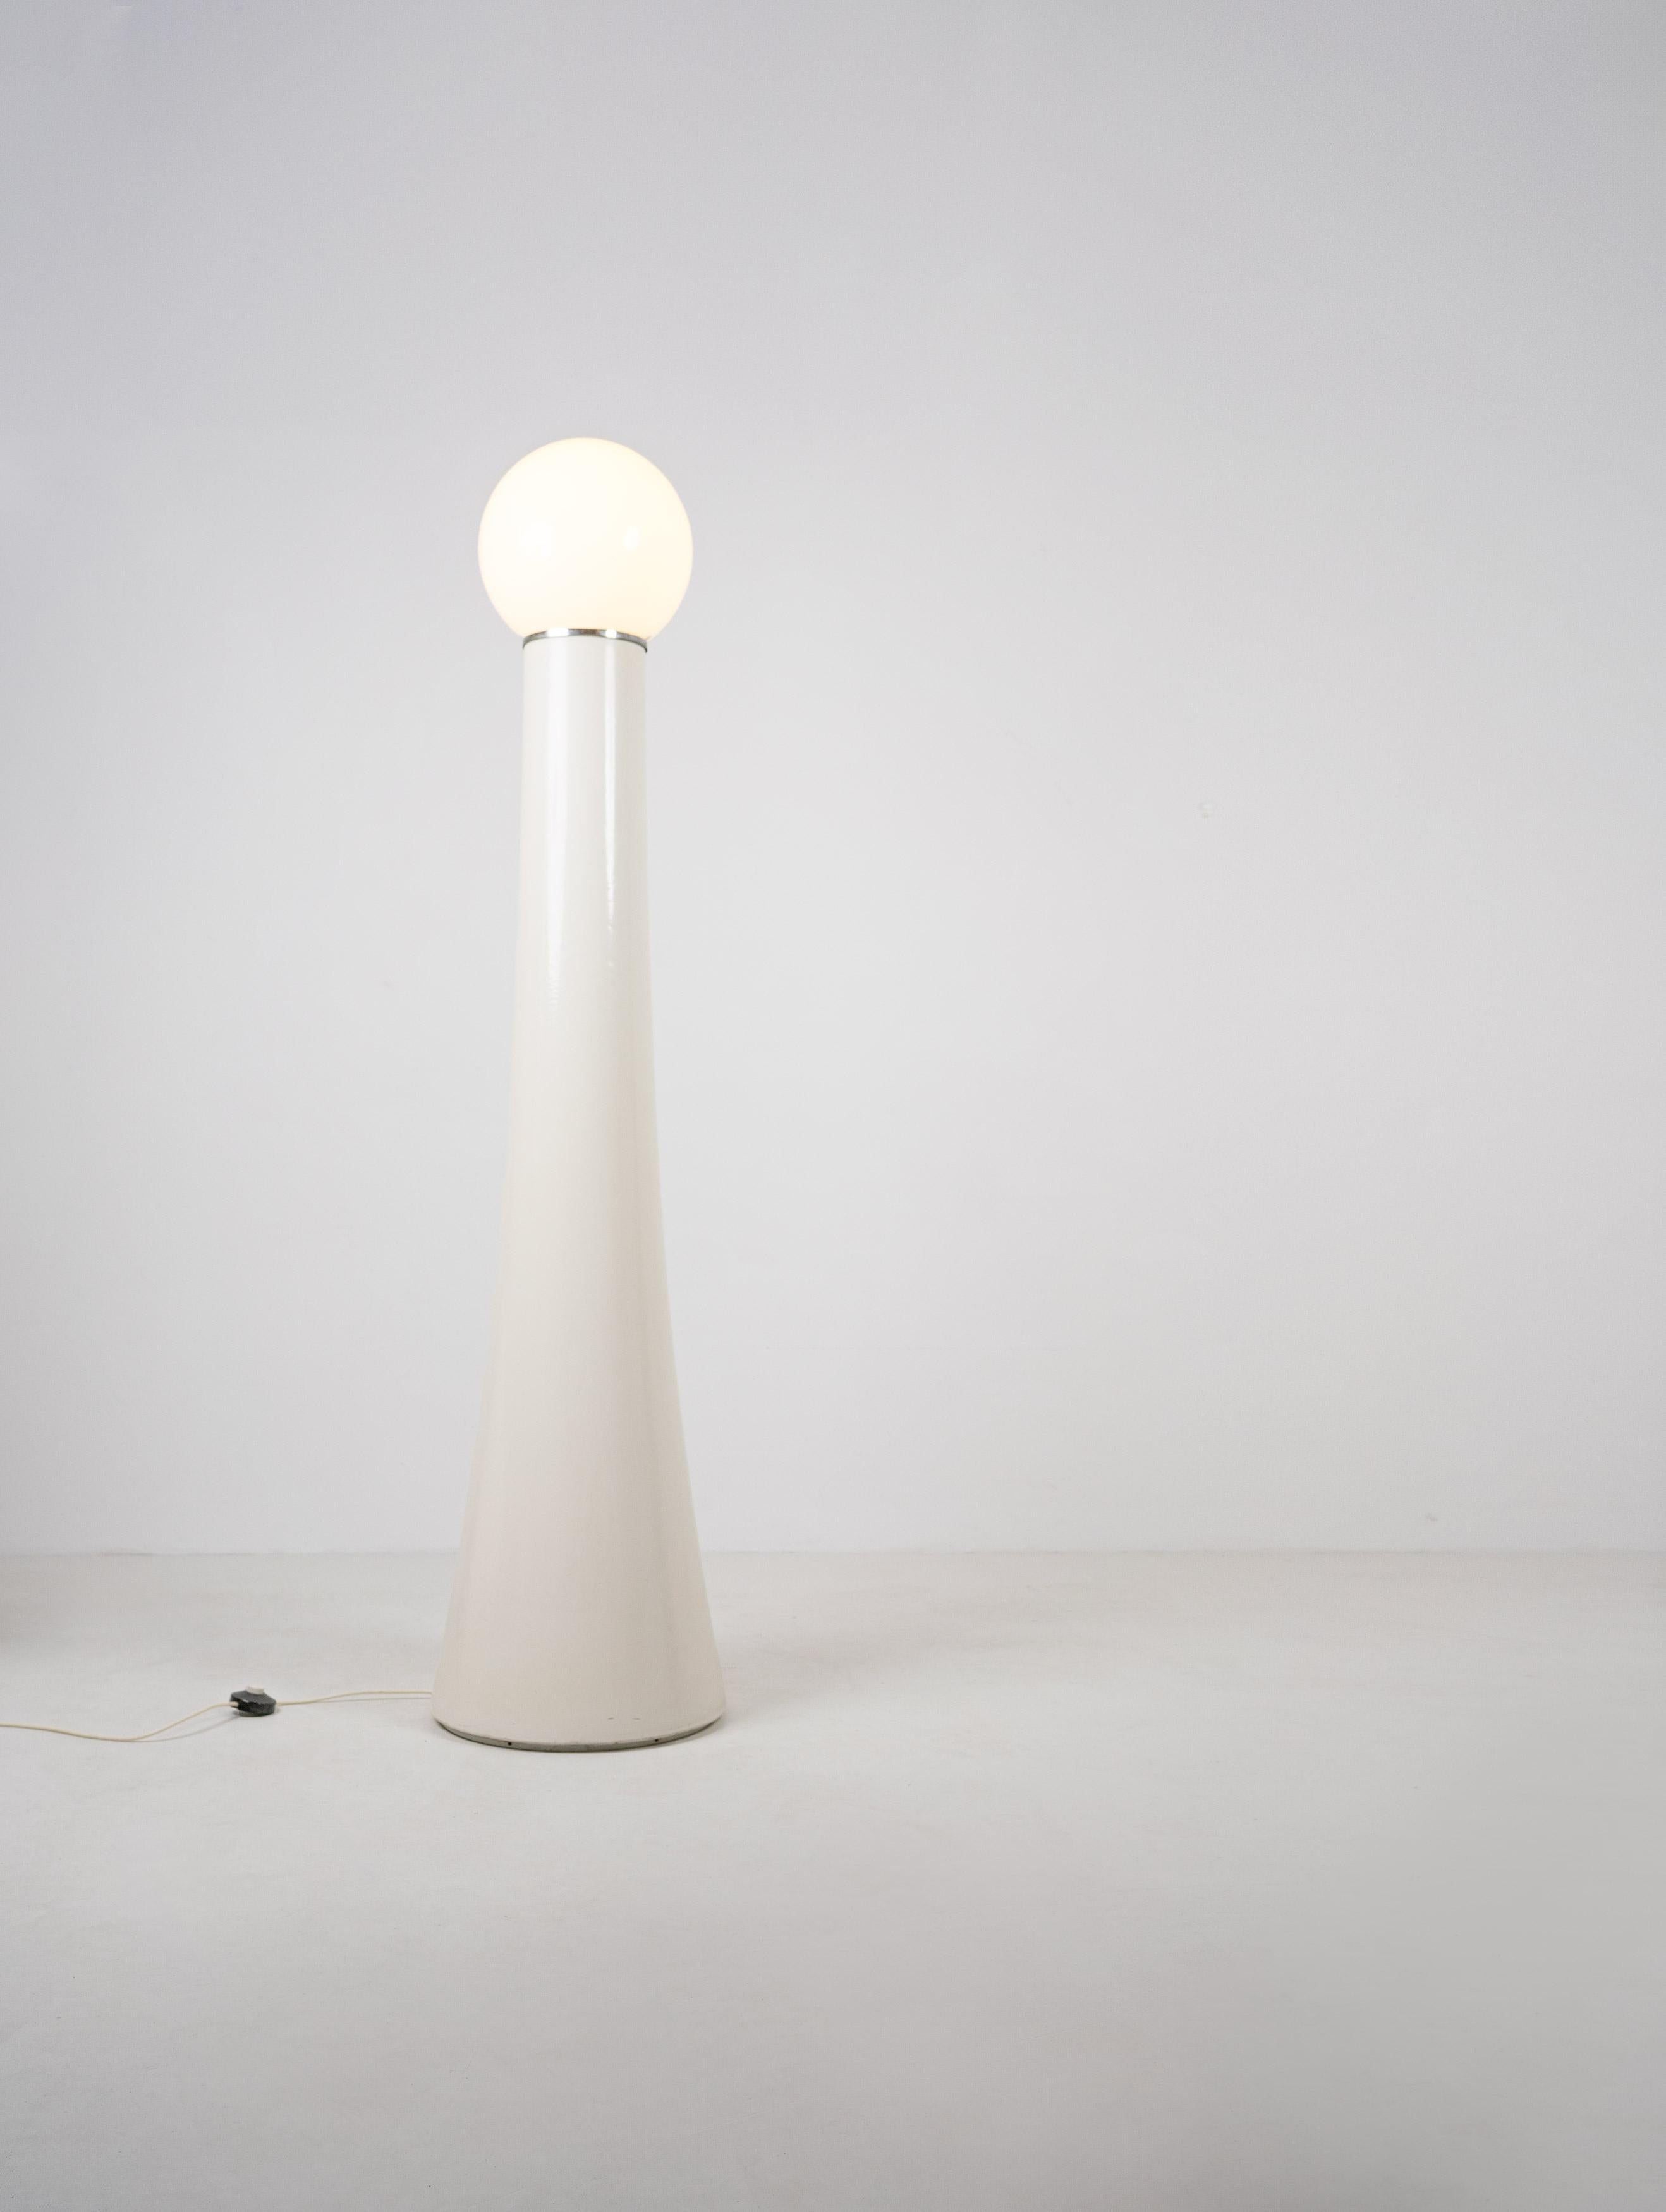 Eine Stehlampe aus den 1970er Jahren, entworfen von Annig Sarian und produziert von Kartell, dem italienischen Hersteller, der für bahnbrechendes Design aus Kunststoff steht. 

Die Leuchte 4059 besteht aus einem hohen Sockel aus Kunststoff und